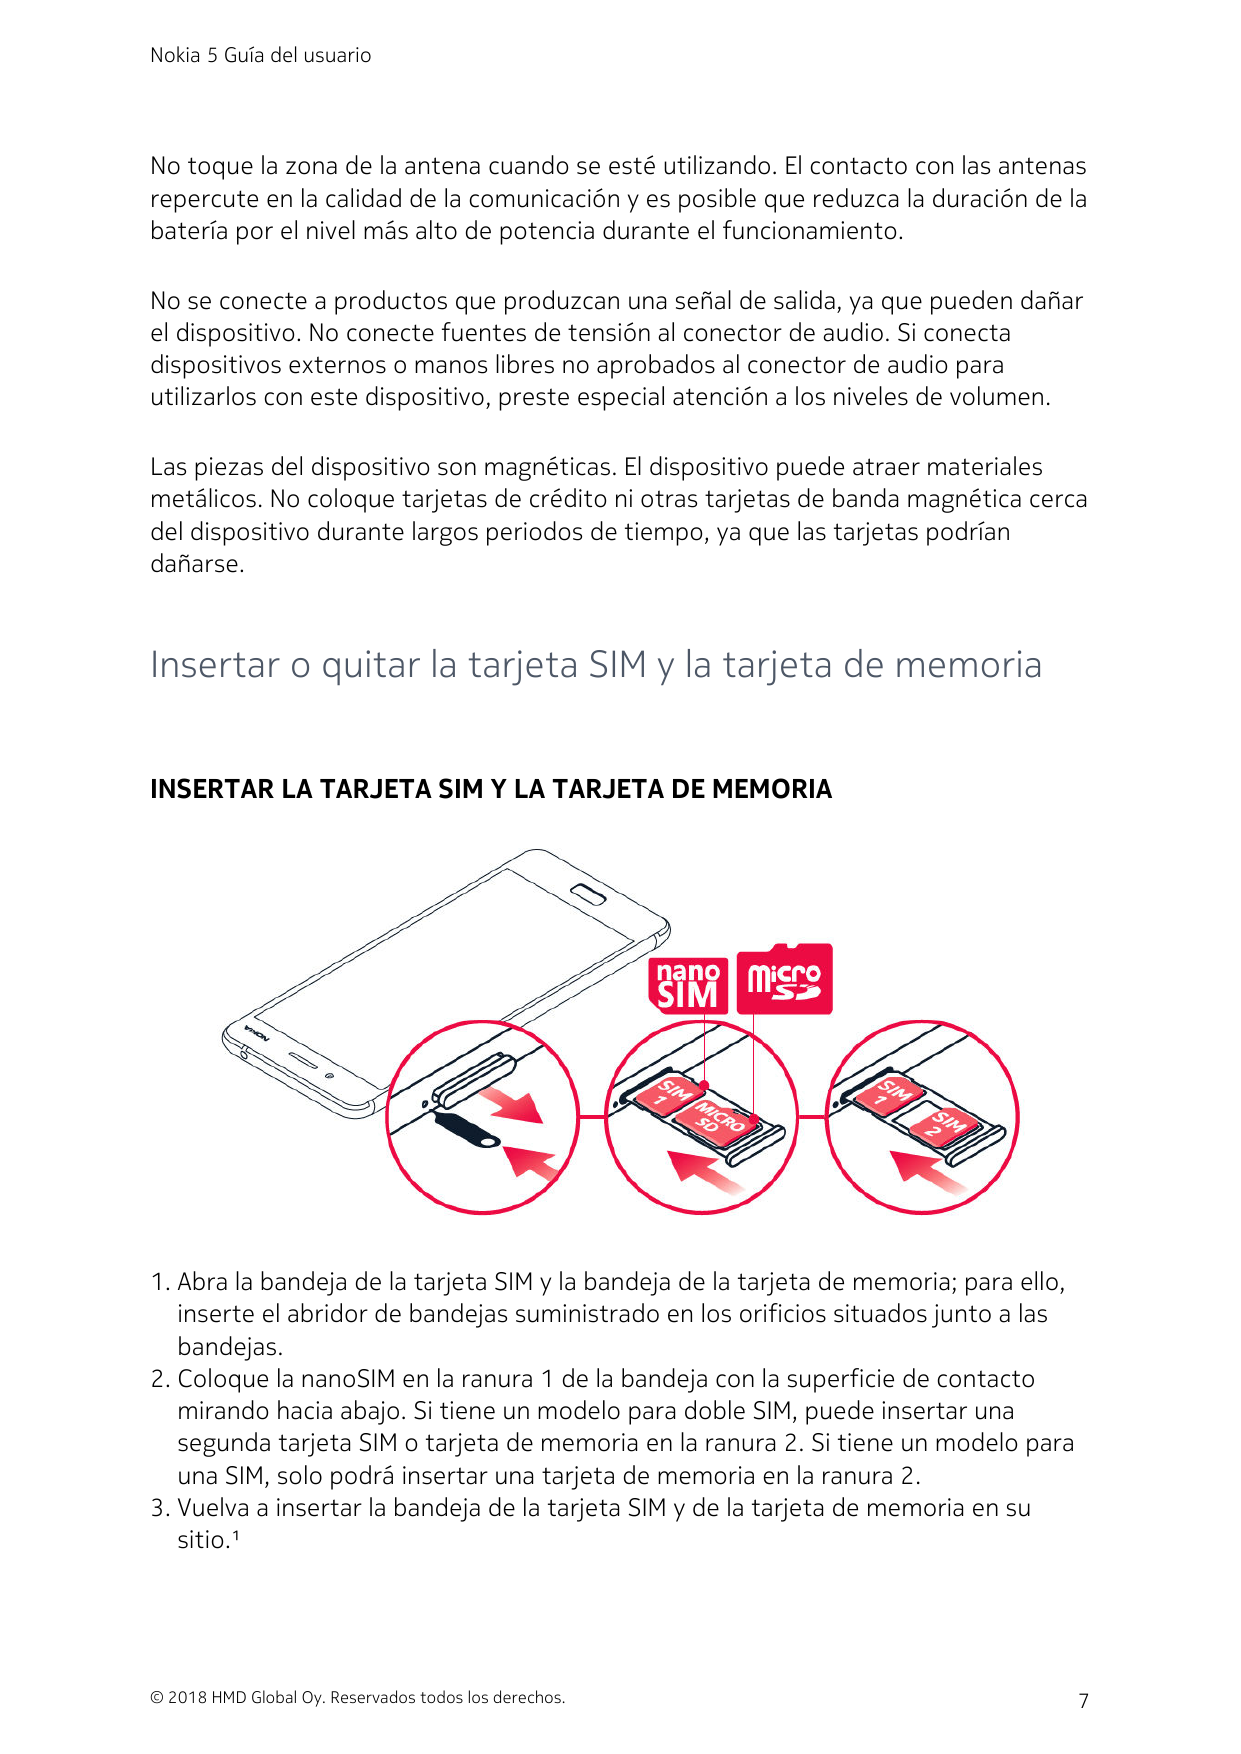 Nokia 5 Guía del usuarioNo toque la zona de la antena cuando se esté utilizando. El contacto con las antenasrepercute en la cali